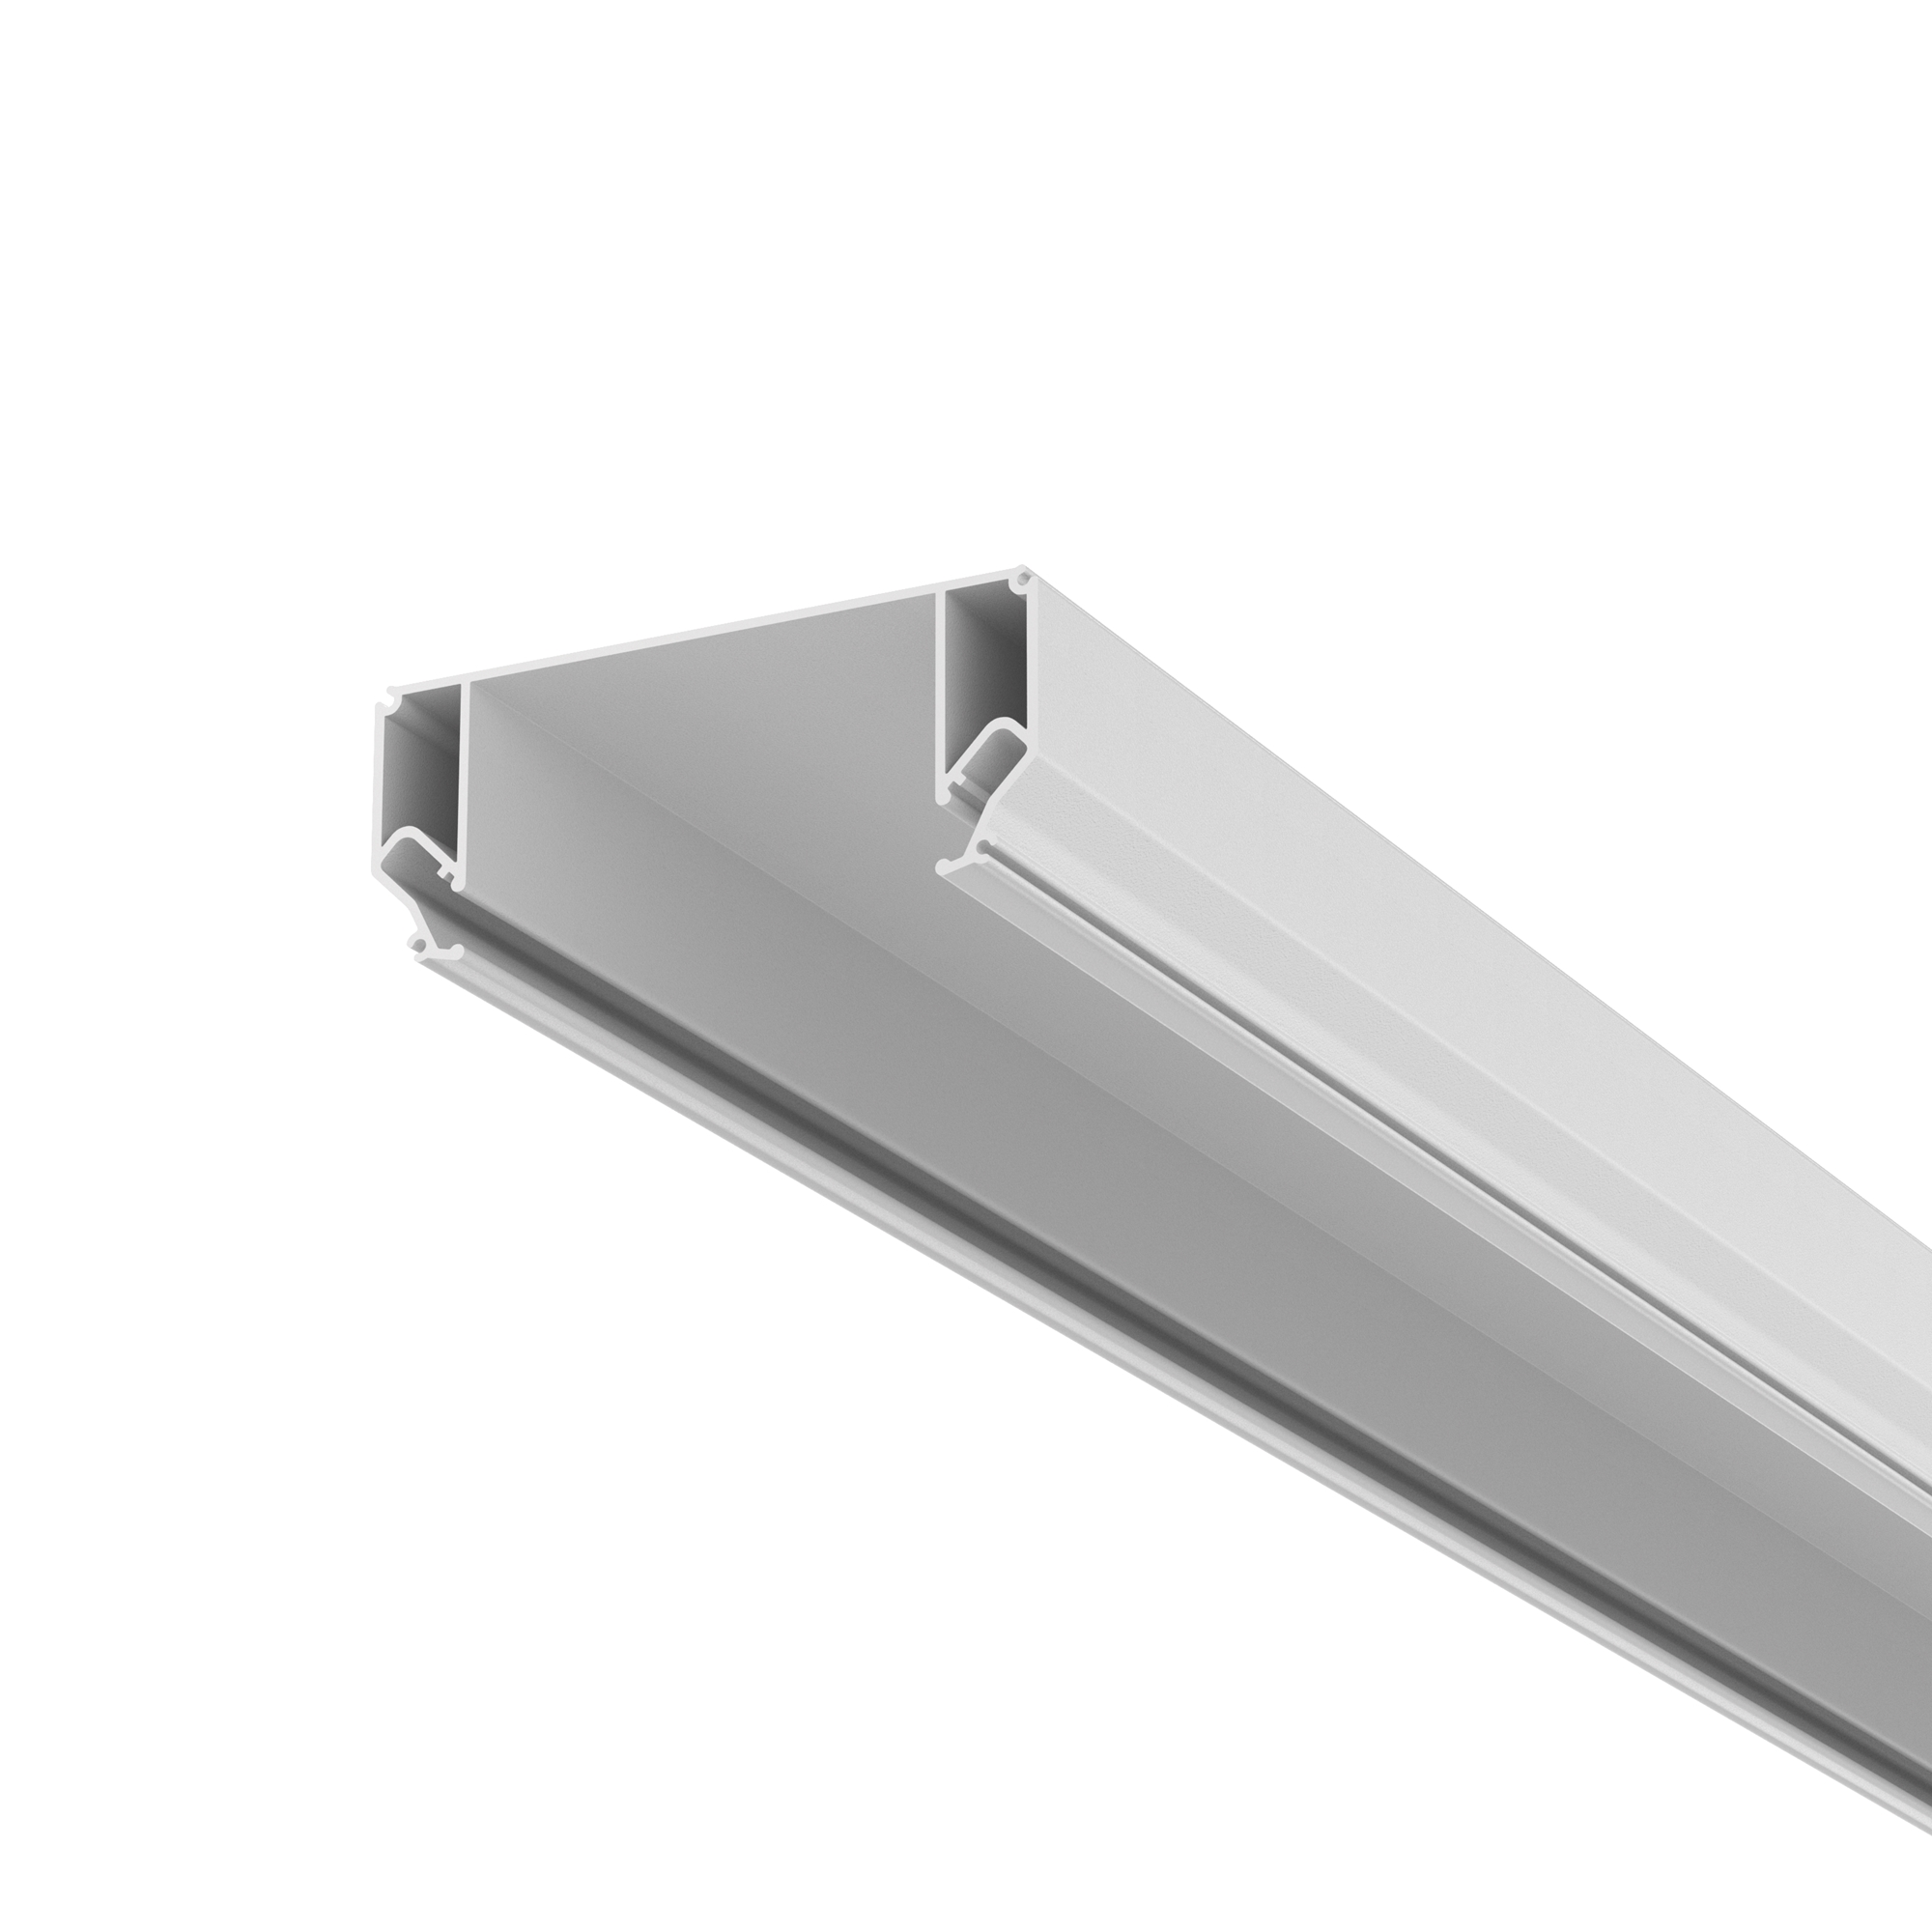 Алюминиевый профиль ниши скрытого монтажа в натяжной потолок 99x140, ALM-9940-SC-W-2M